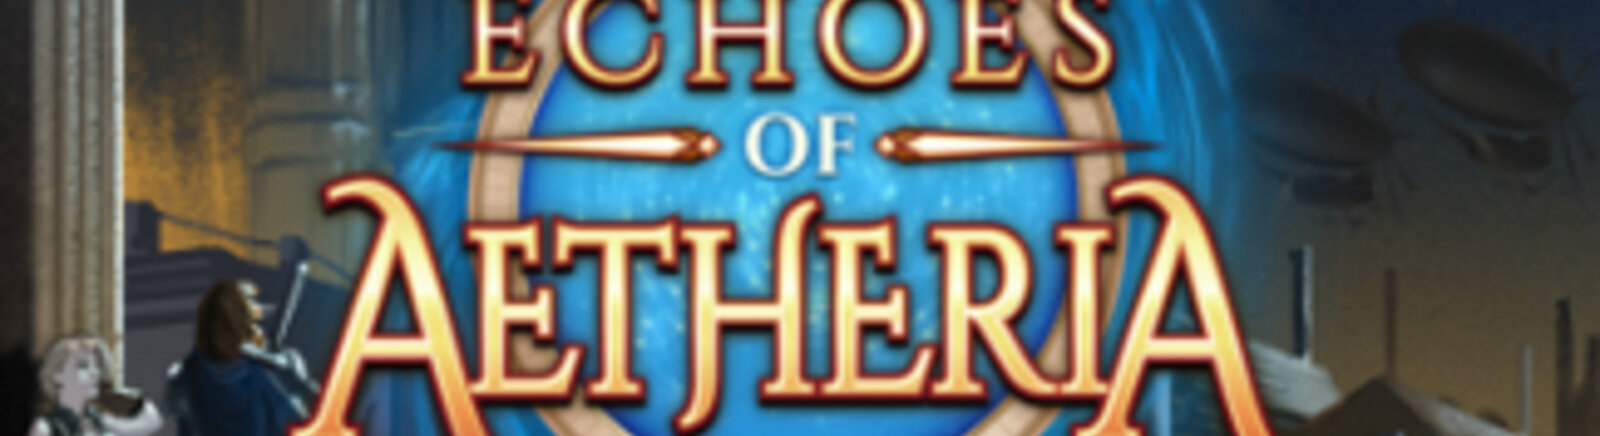 Дата выхода Echoes of Aetheria  на PC в России и во всем мире